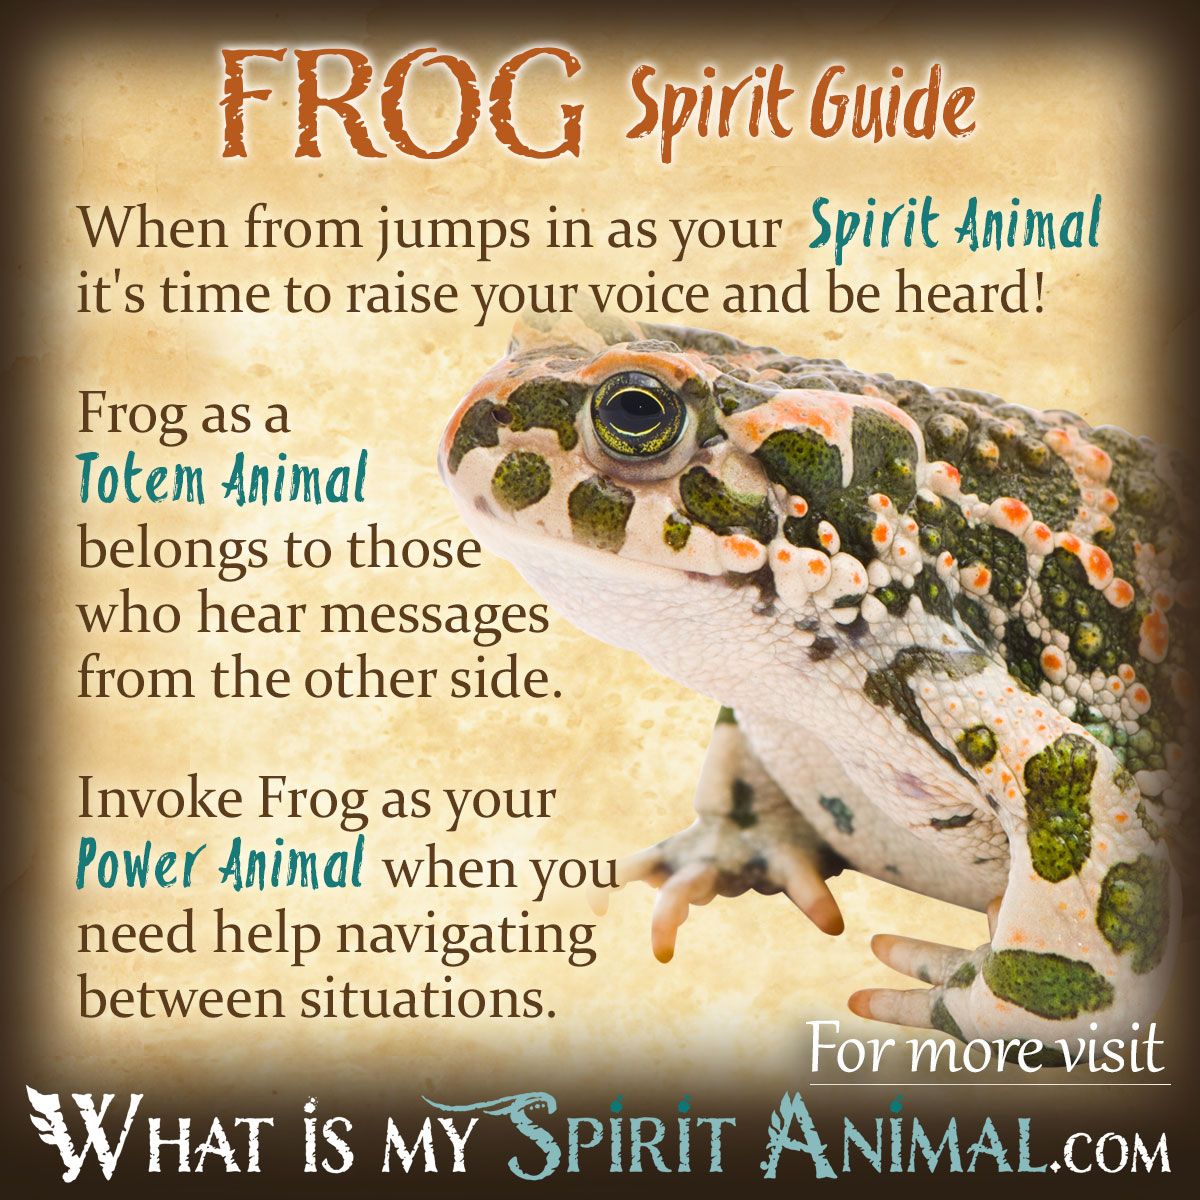 La rana, animal espiritual